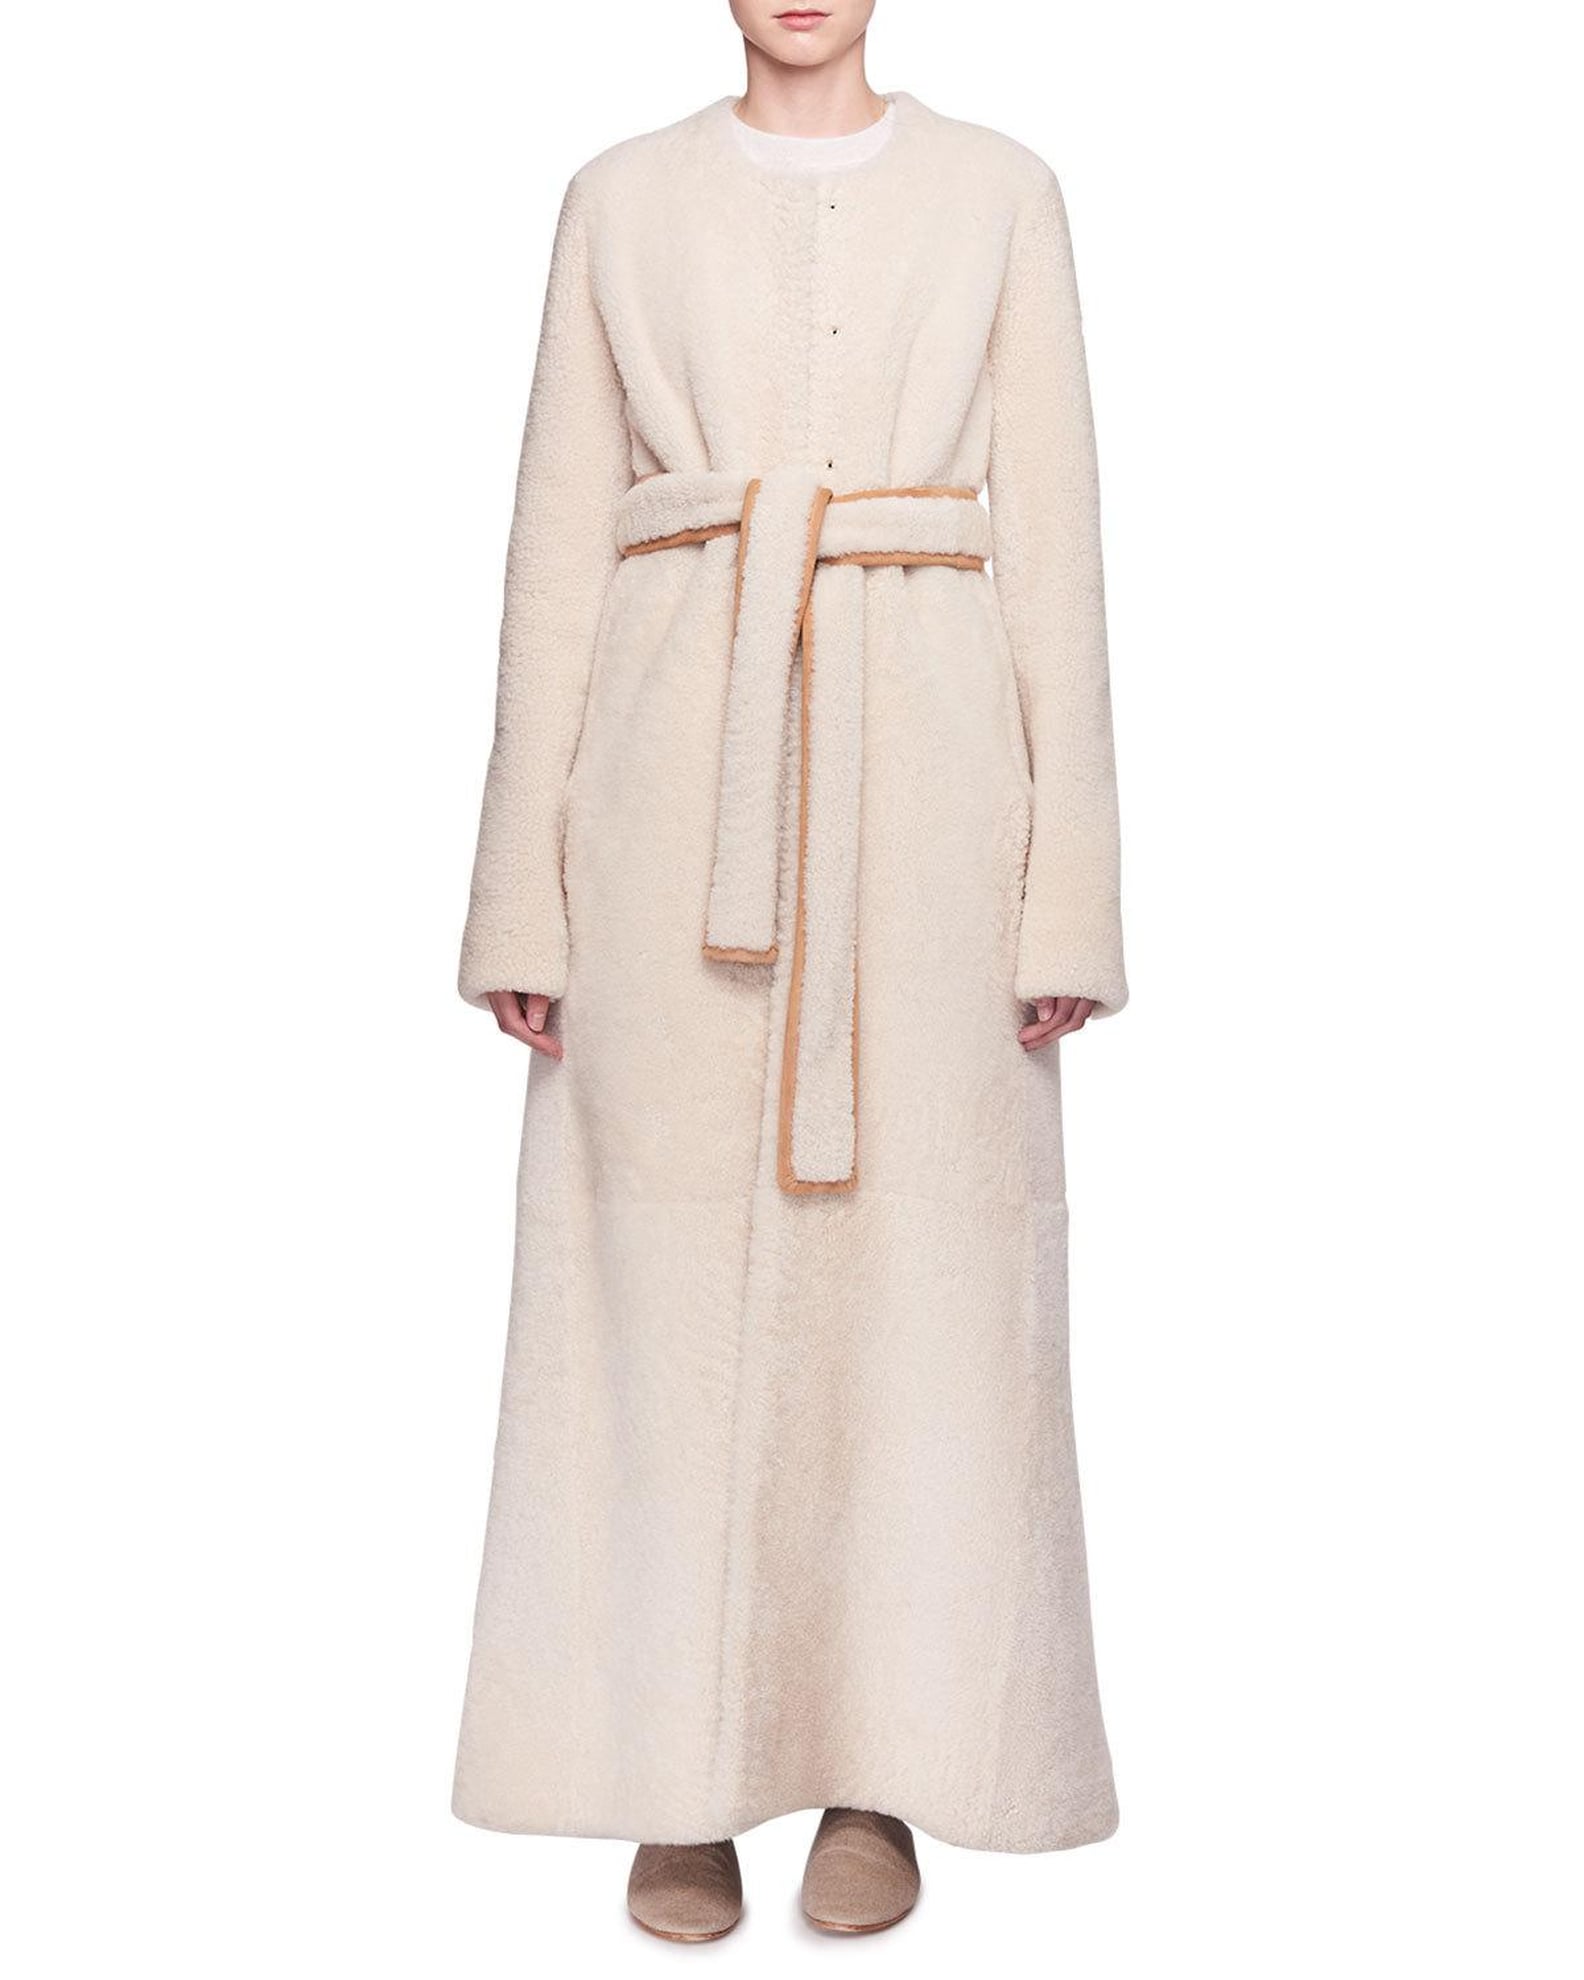 Lady Gaga Camel Coat by Gabriela Hearst January 2019 | POPSUGAR Fashion